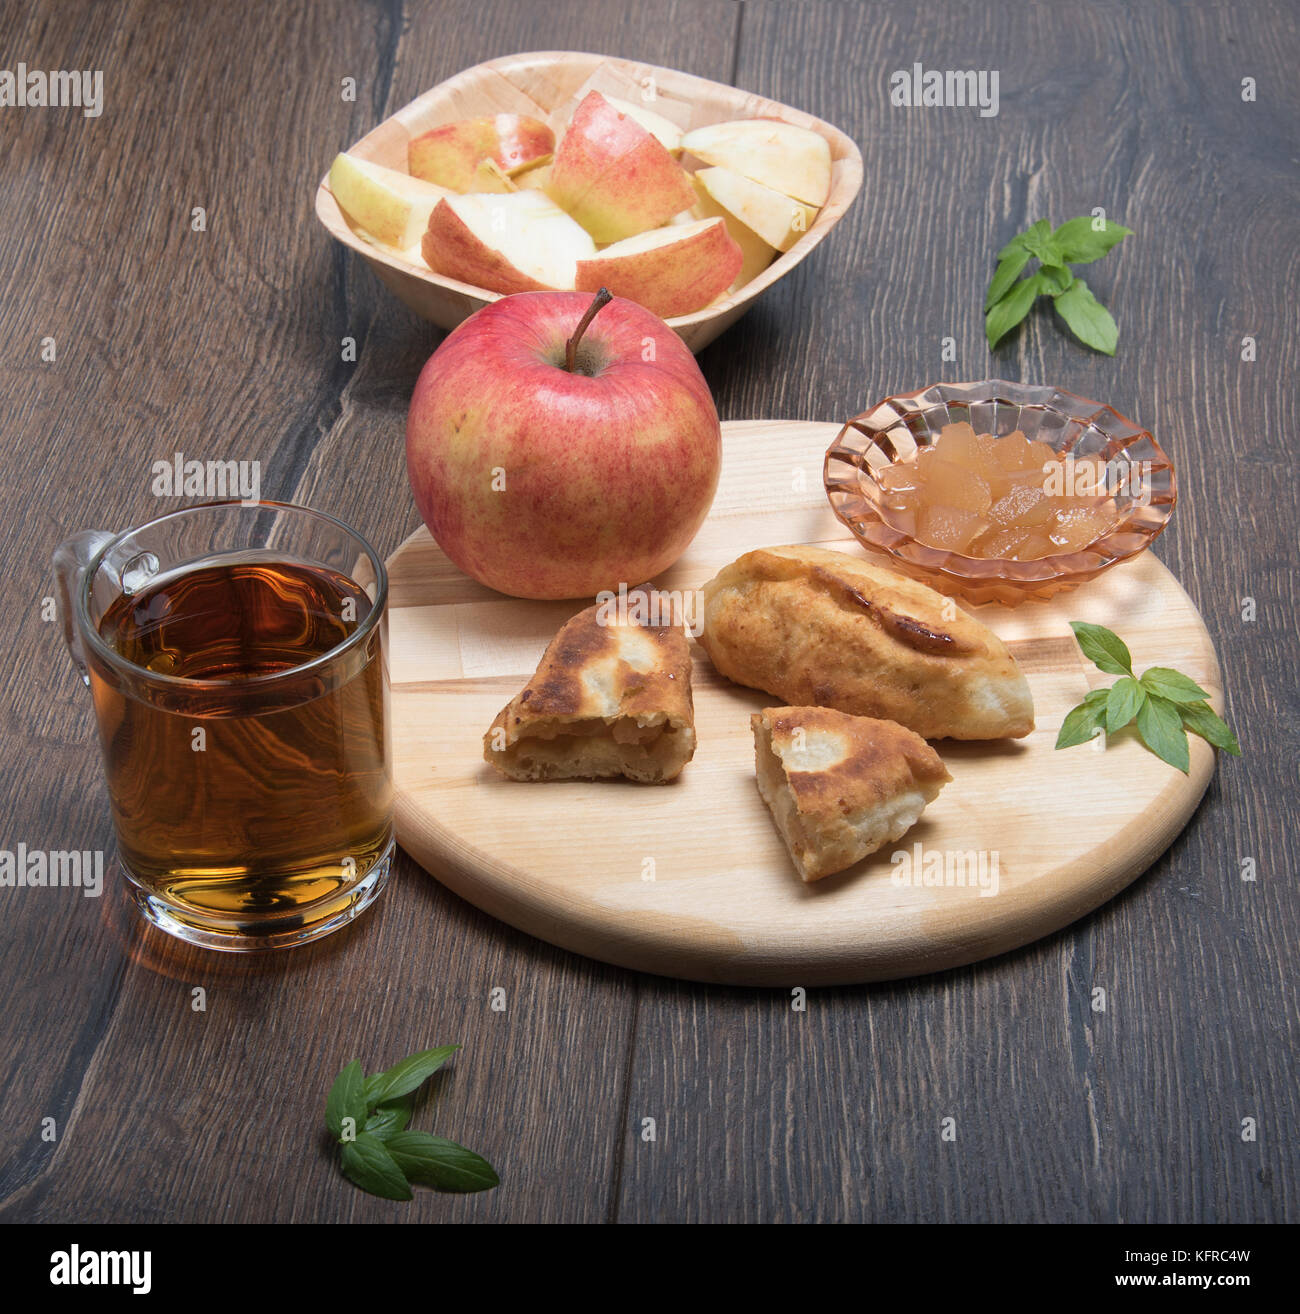 Le jus de pomme, confiture, tartes à la confiture sur un fond de bois Banque D'Images